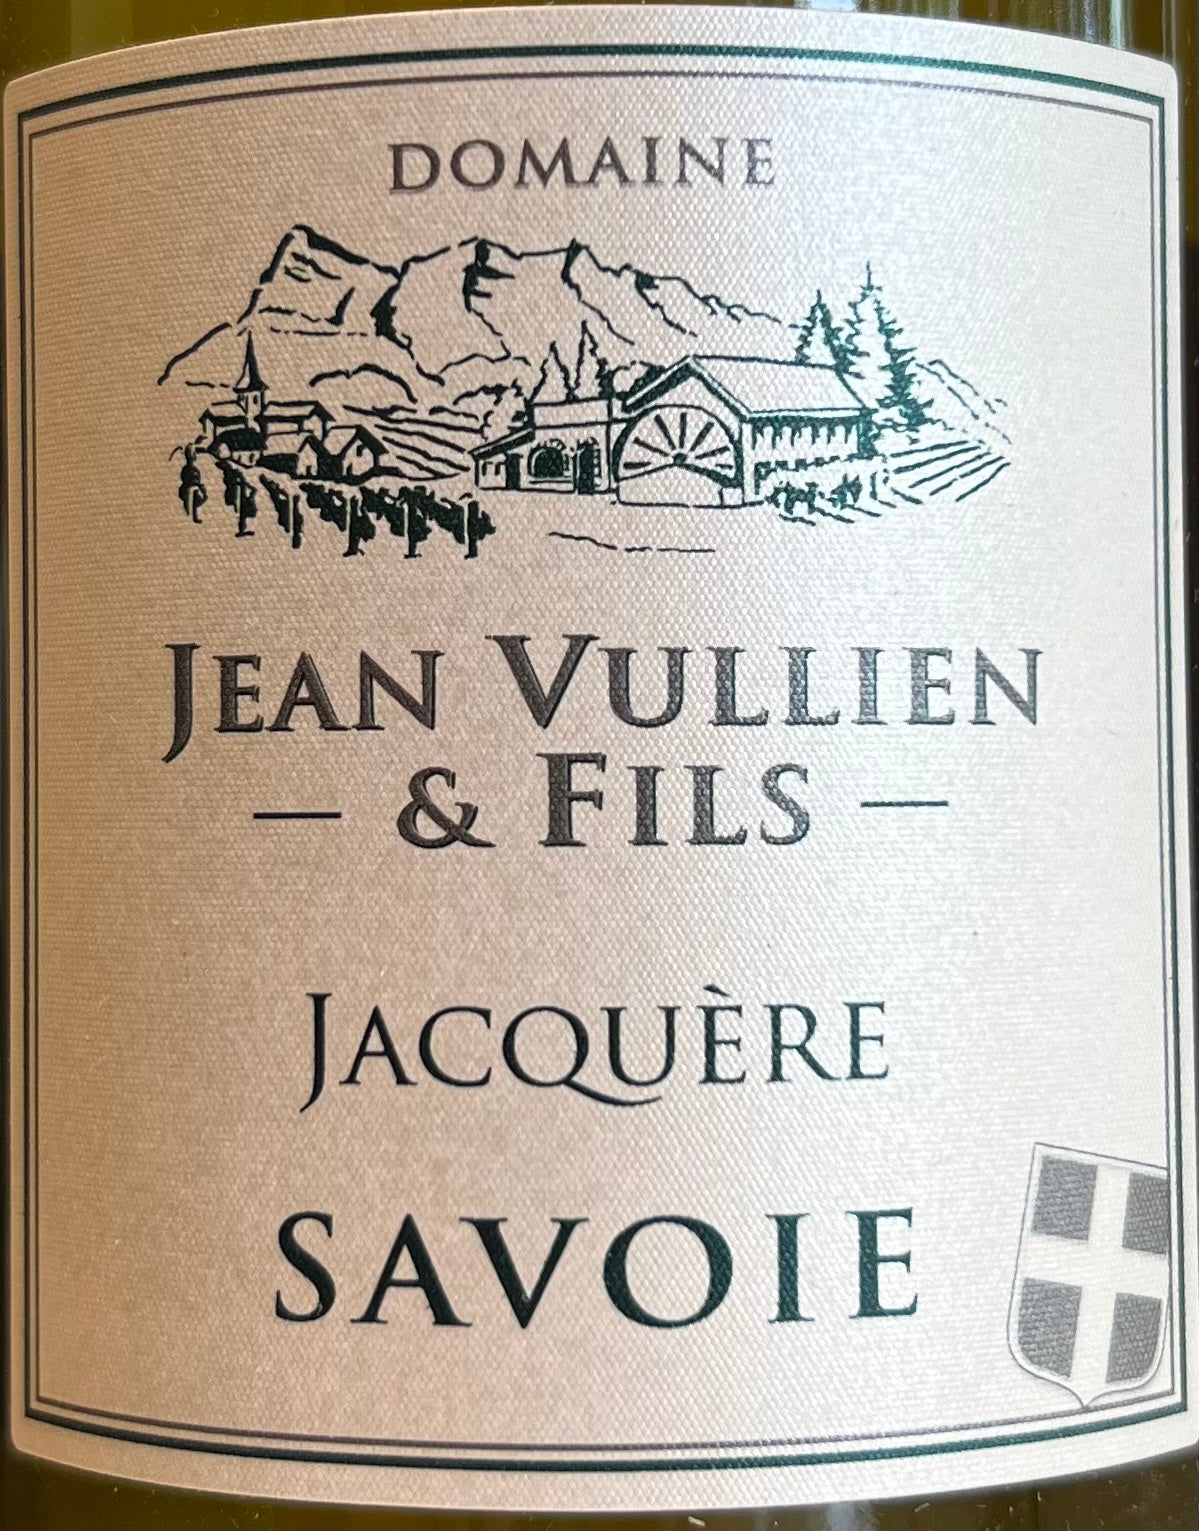 Domaine Jean Vullien & Fils Jacquere Savoie Blanc